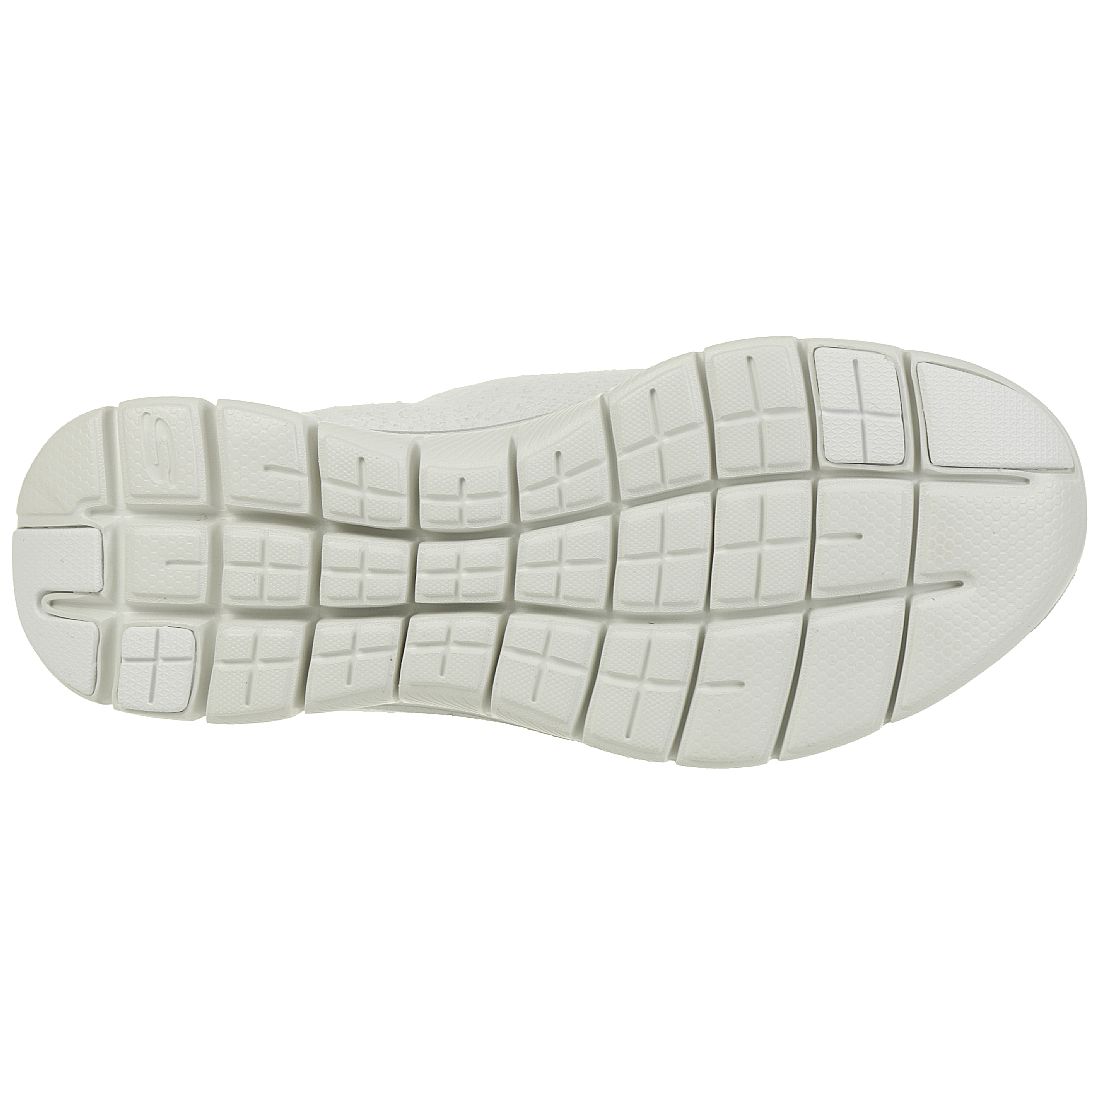 Skechers Flex Appeal 2.0 CLEAR CUT Damen Sneaker Slip on Memory Foam weiss silber 12907